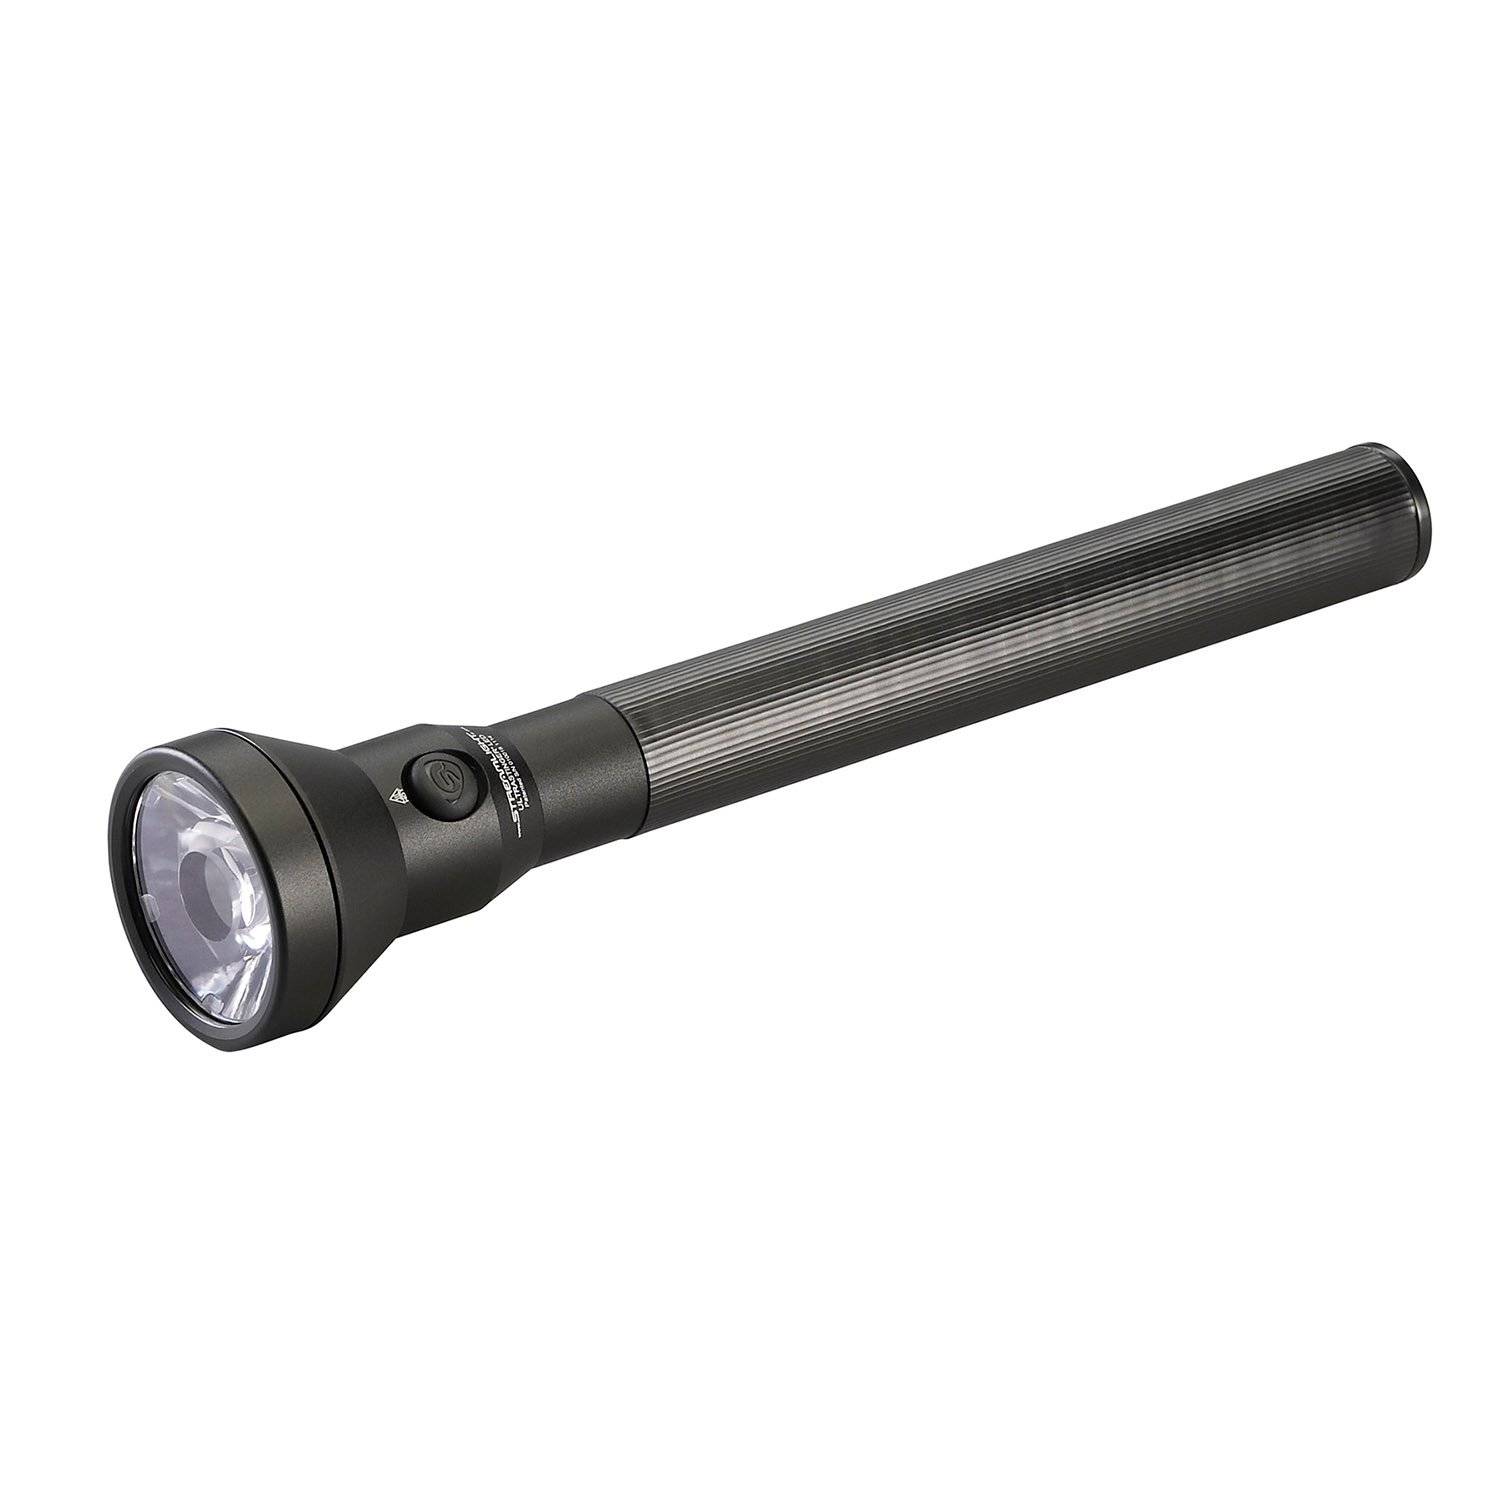 Streamlight UltraStinger LED Rechargeable Flashlight